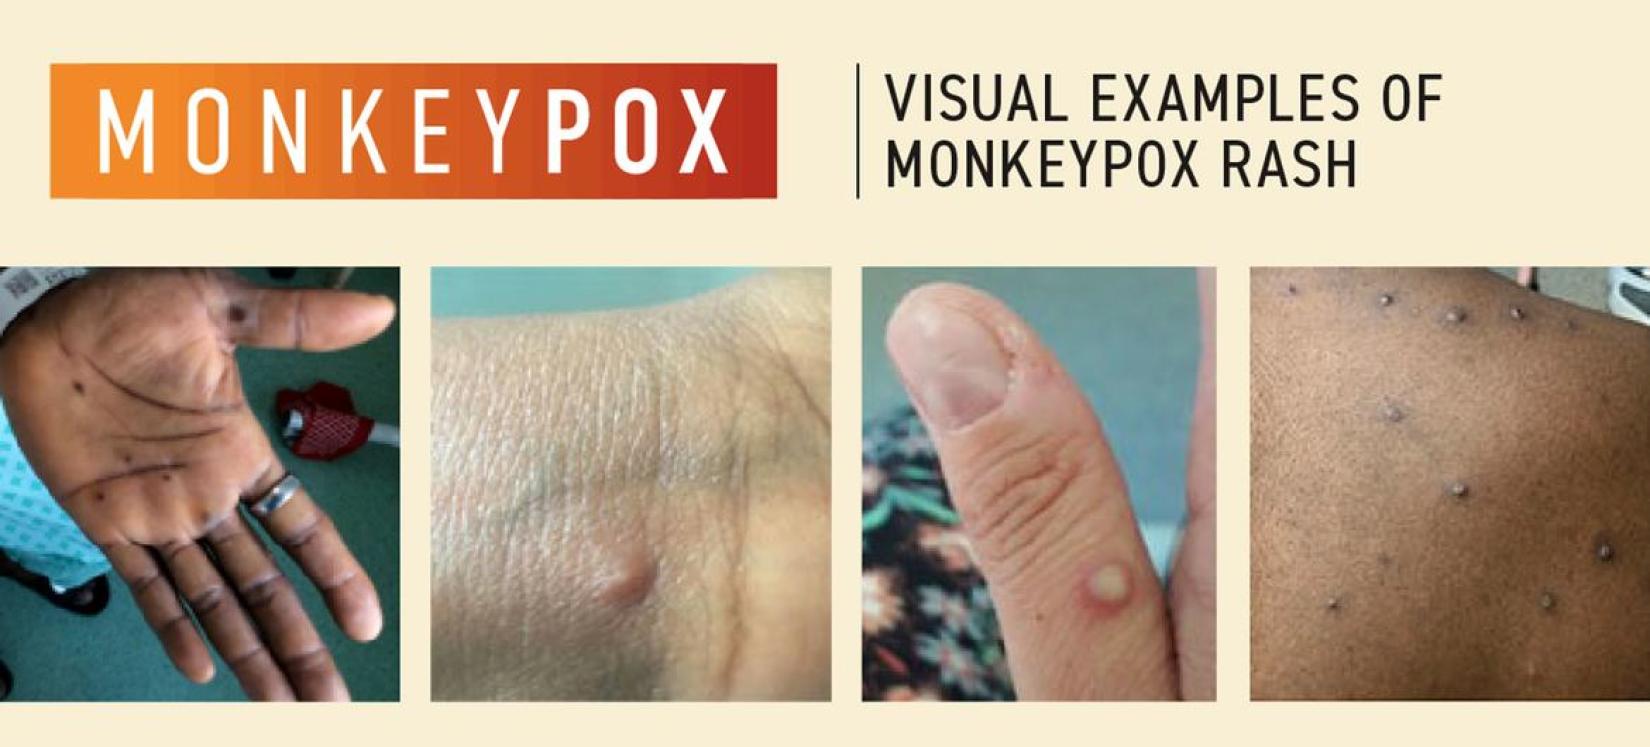 Exemplos de erupções na pele provocadas pelo vírus monkeypox ou varíola dos macacos